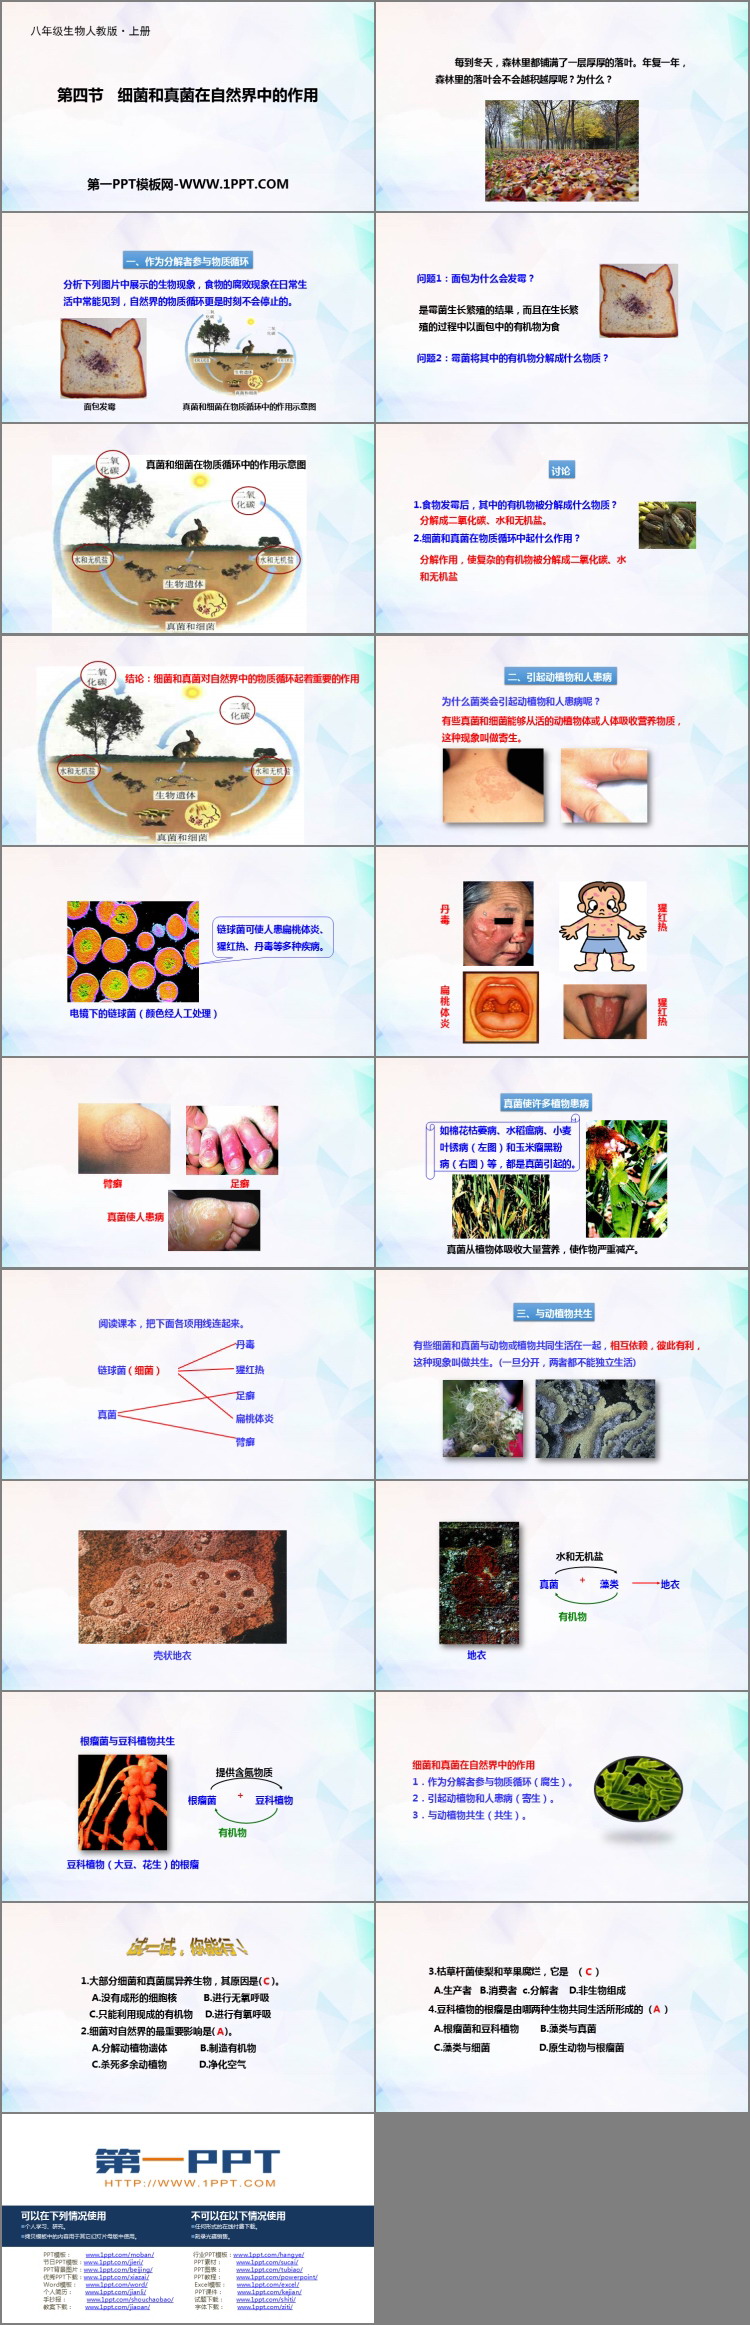 《细菌和真菌在自然界中的作用》PPT课件下载-预览图02